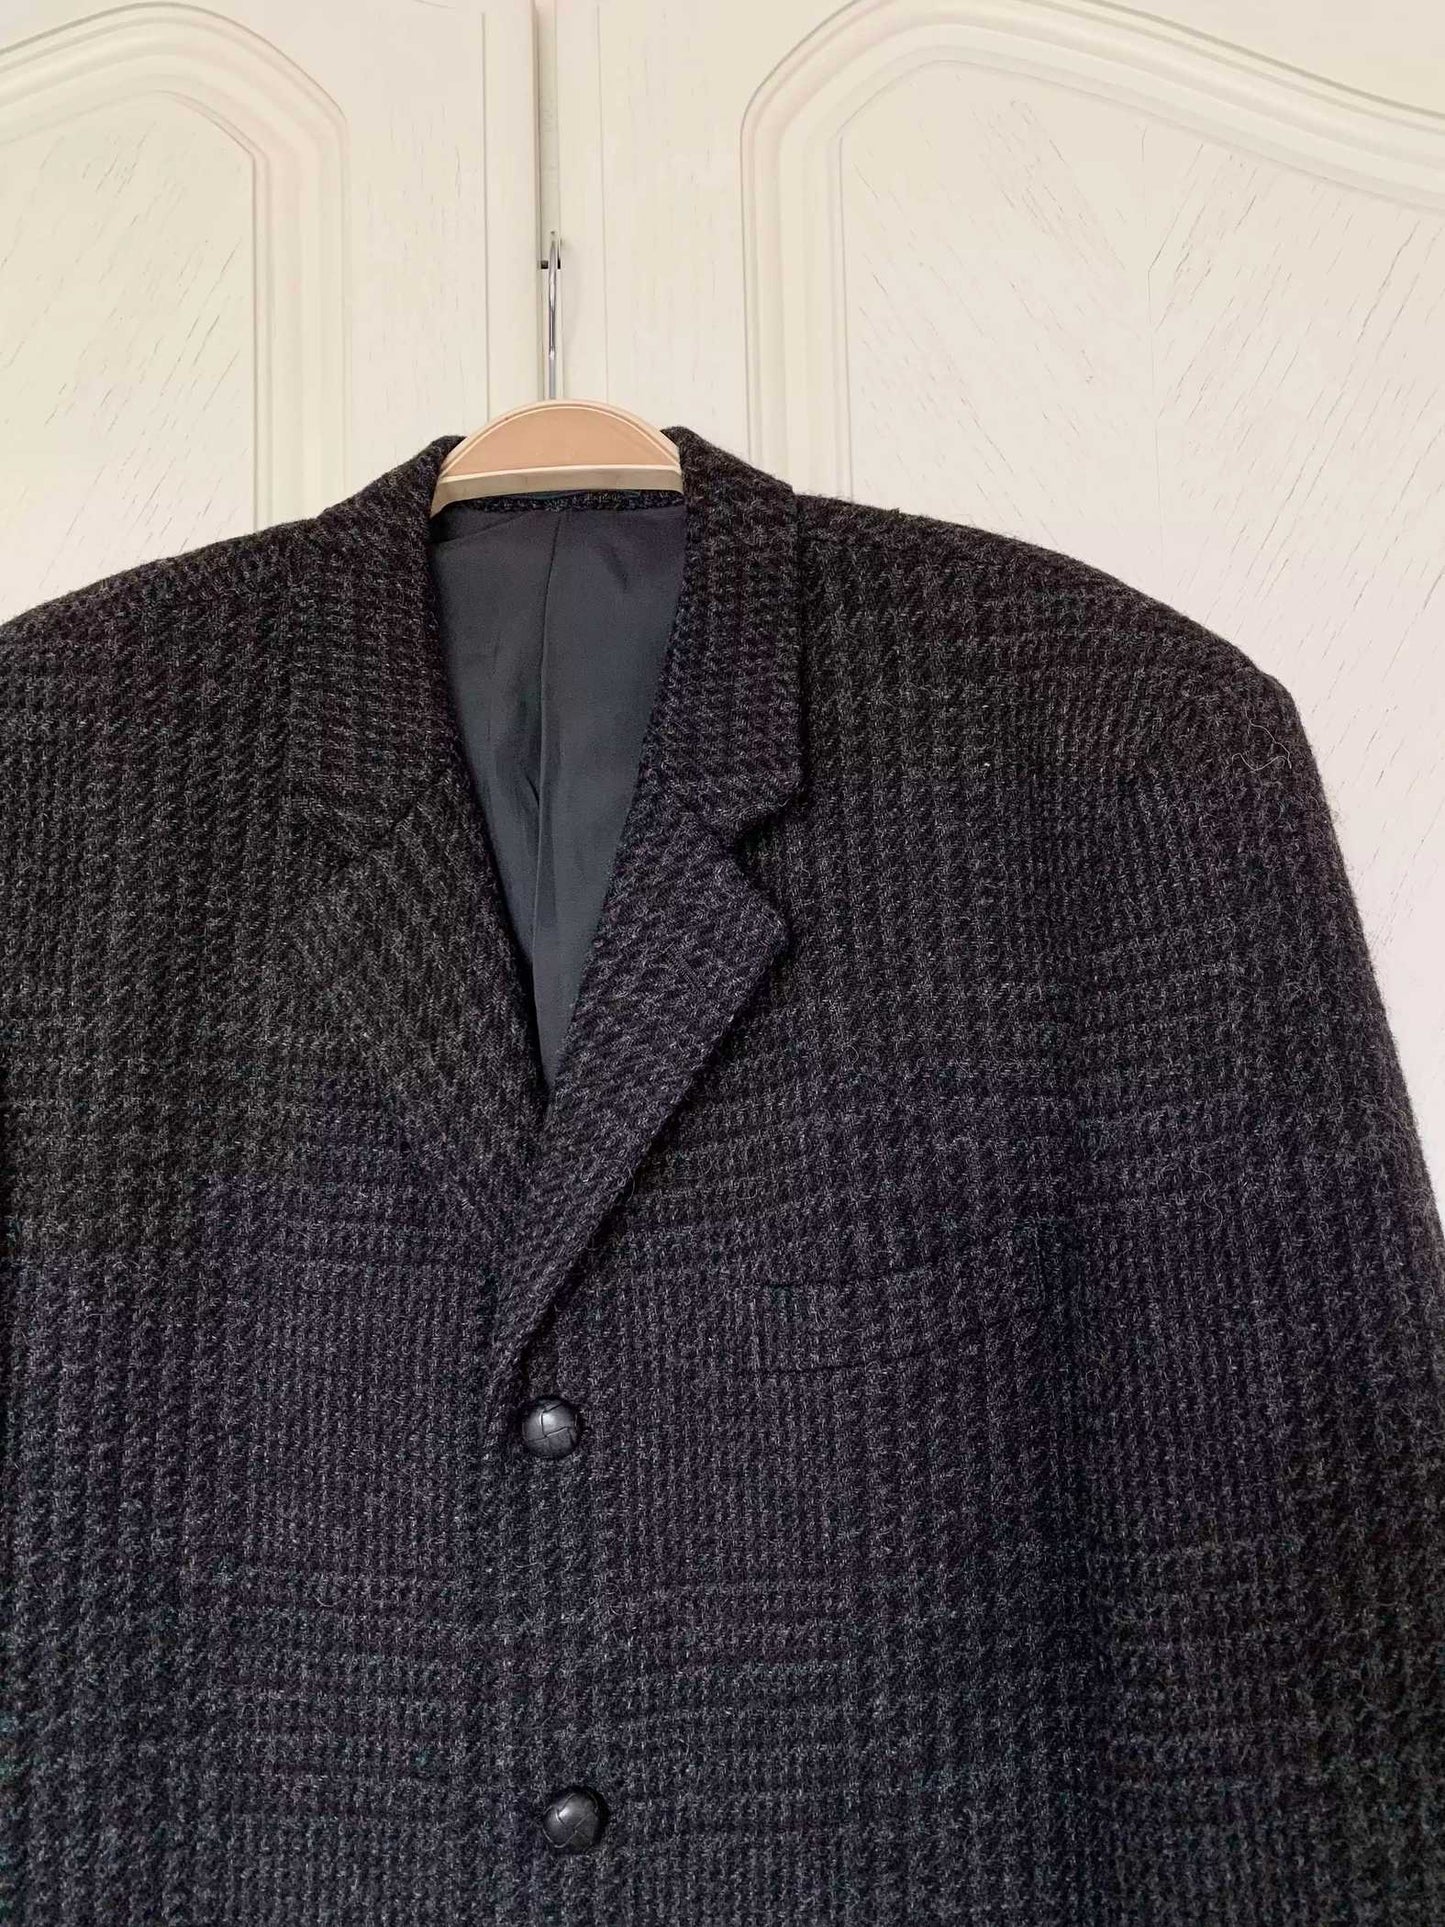 CDG Homme Plus 90S Woolen Plaid Suit JKT